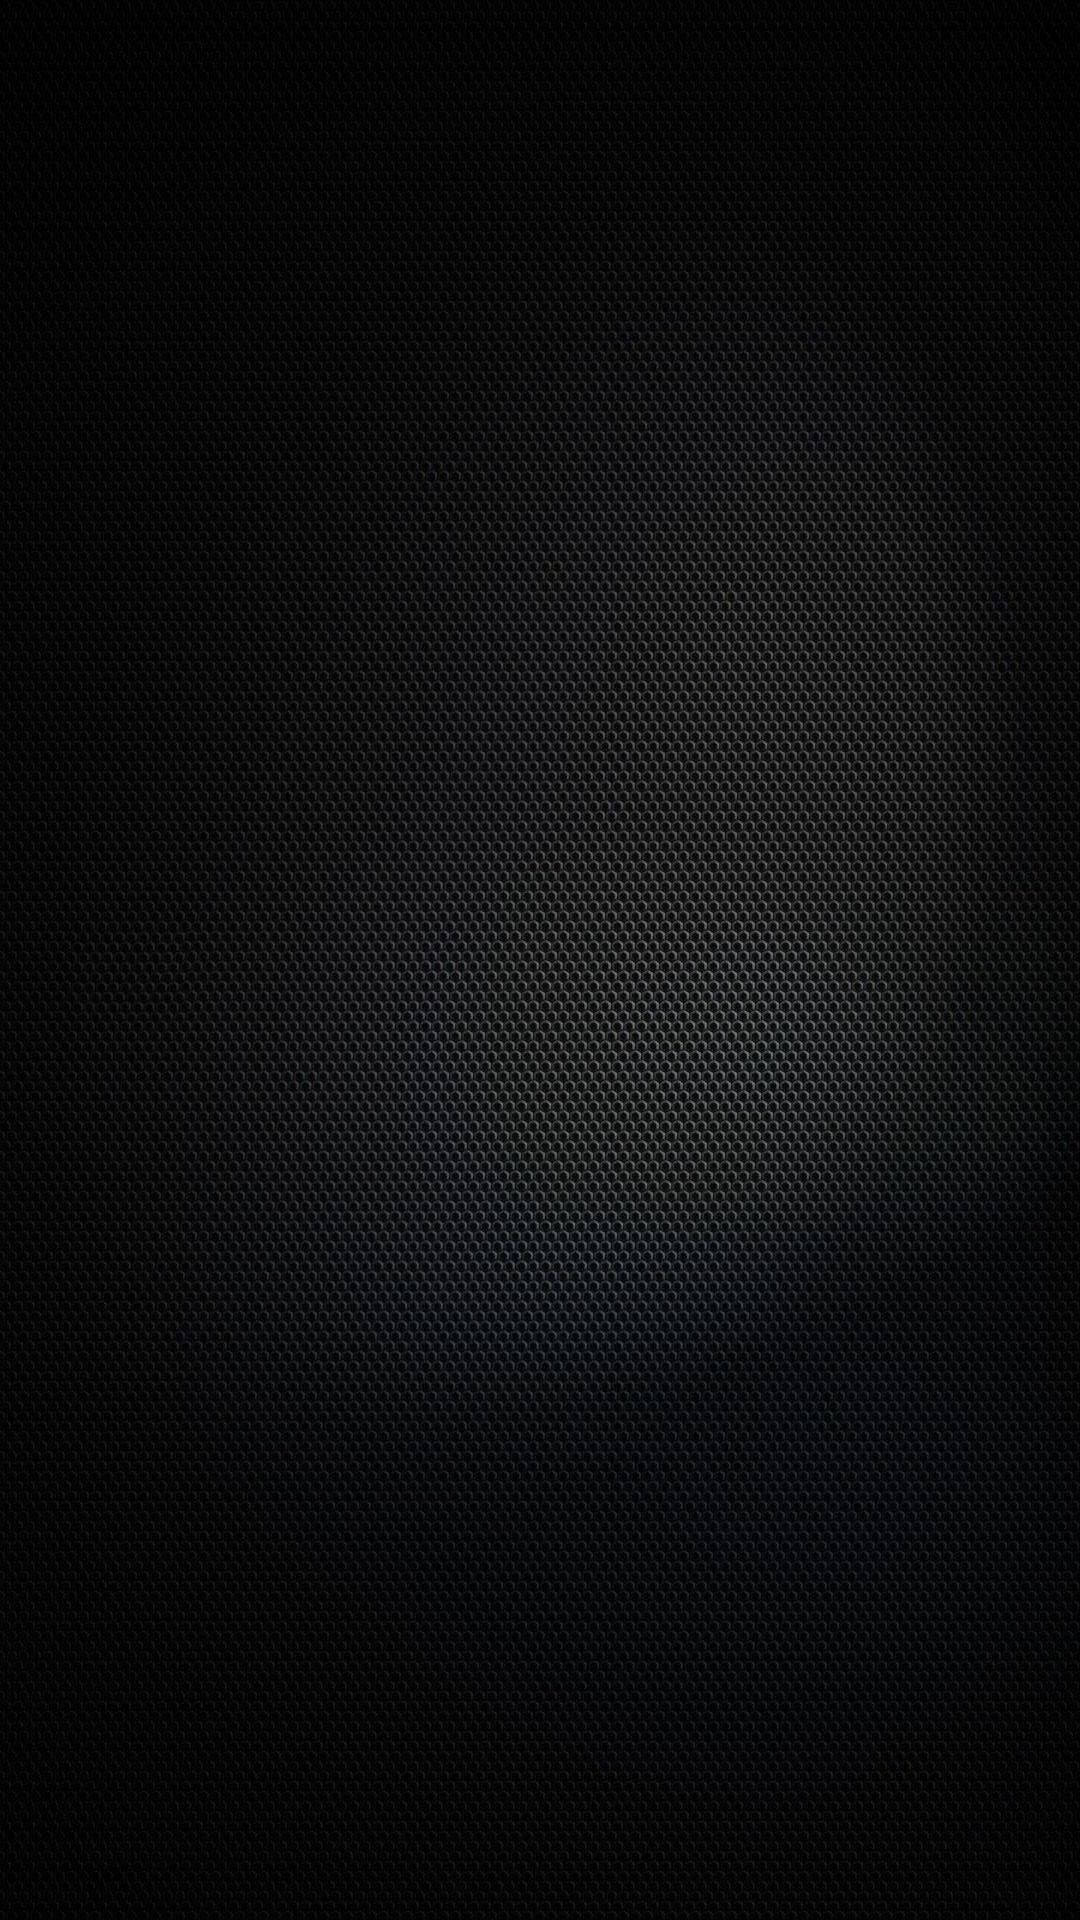 Mesh Pure Black Hd Phone Screen Background